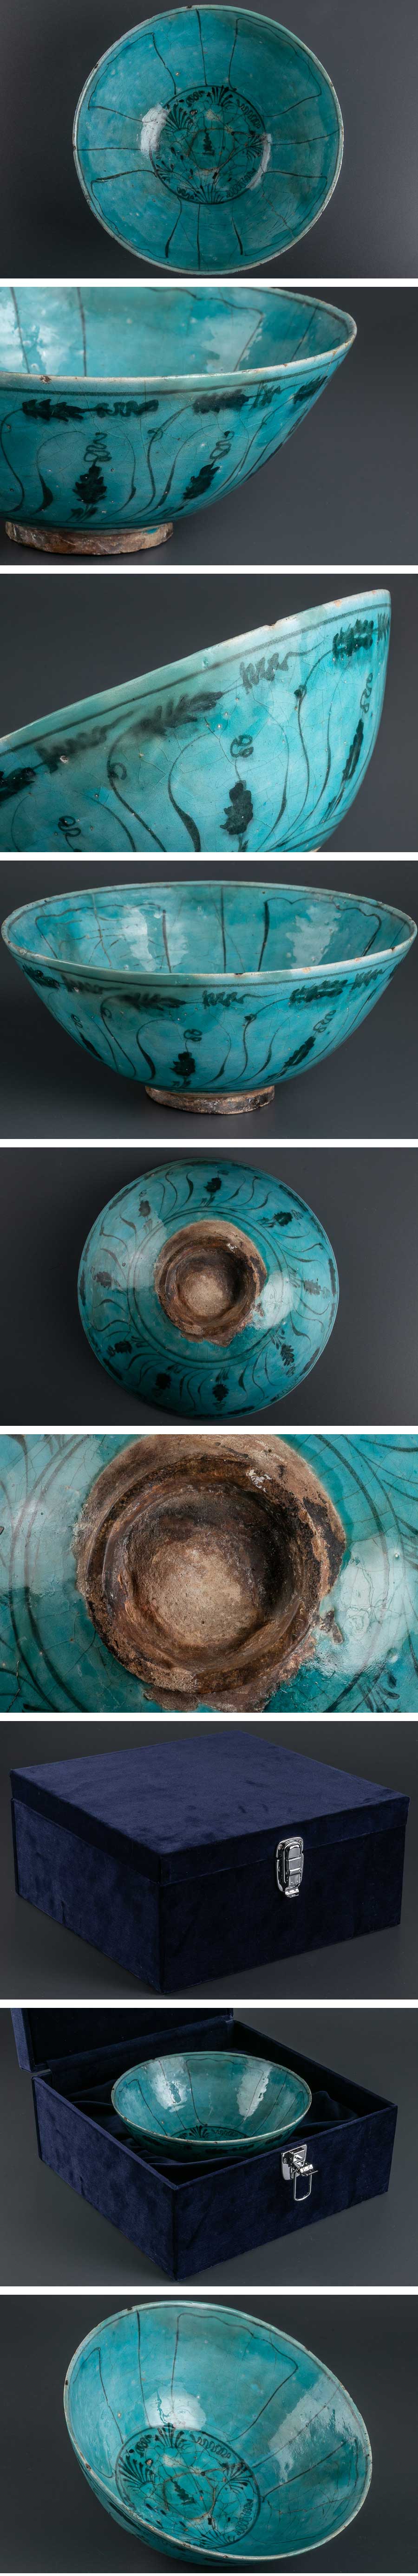 買付『 ペルシャ 古陶磁 藍釉草花絵鉢 箱付 8613 』 発掘品 考古学 イラン 銀化 ラスター彩 古美術 西洋美術 イスラム陶器